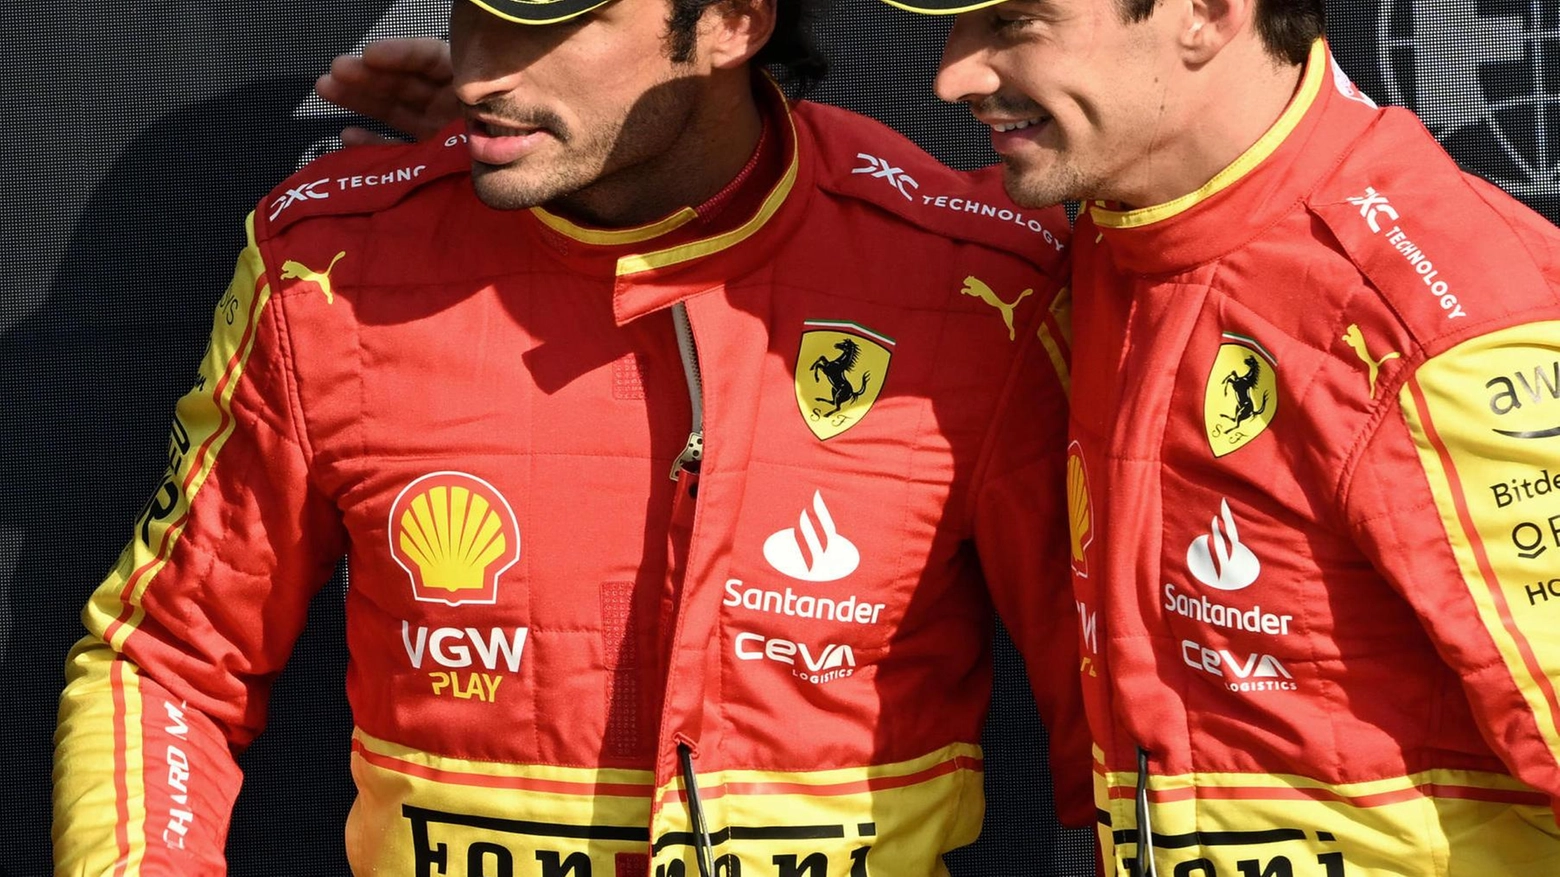 Carlos e Charles, chi comanda?. Ferrari a Suzuka con due capitani